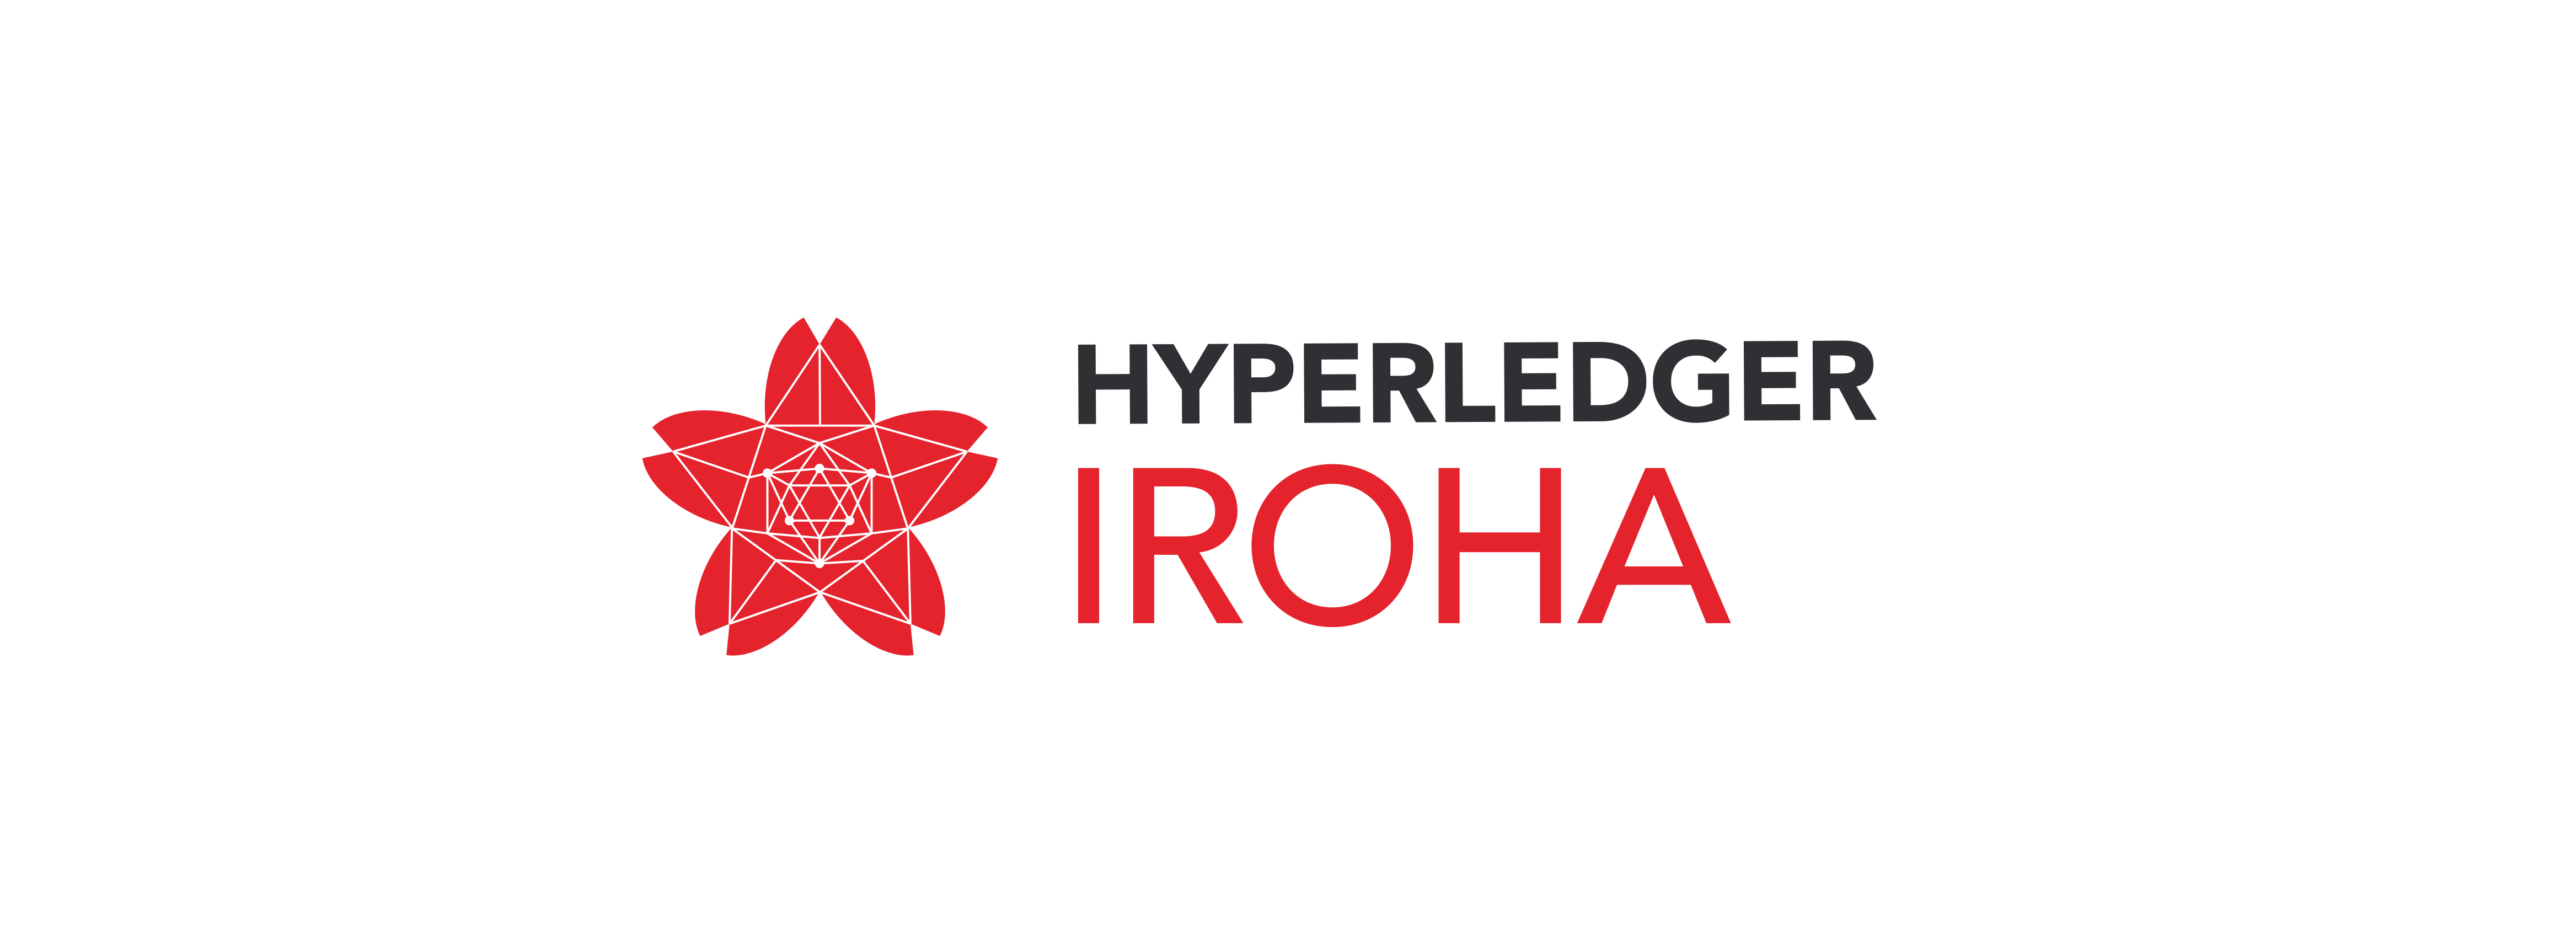 _images/iroha_logo.png